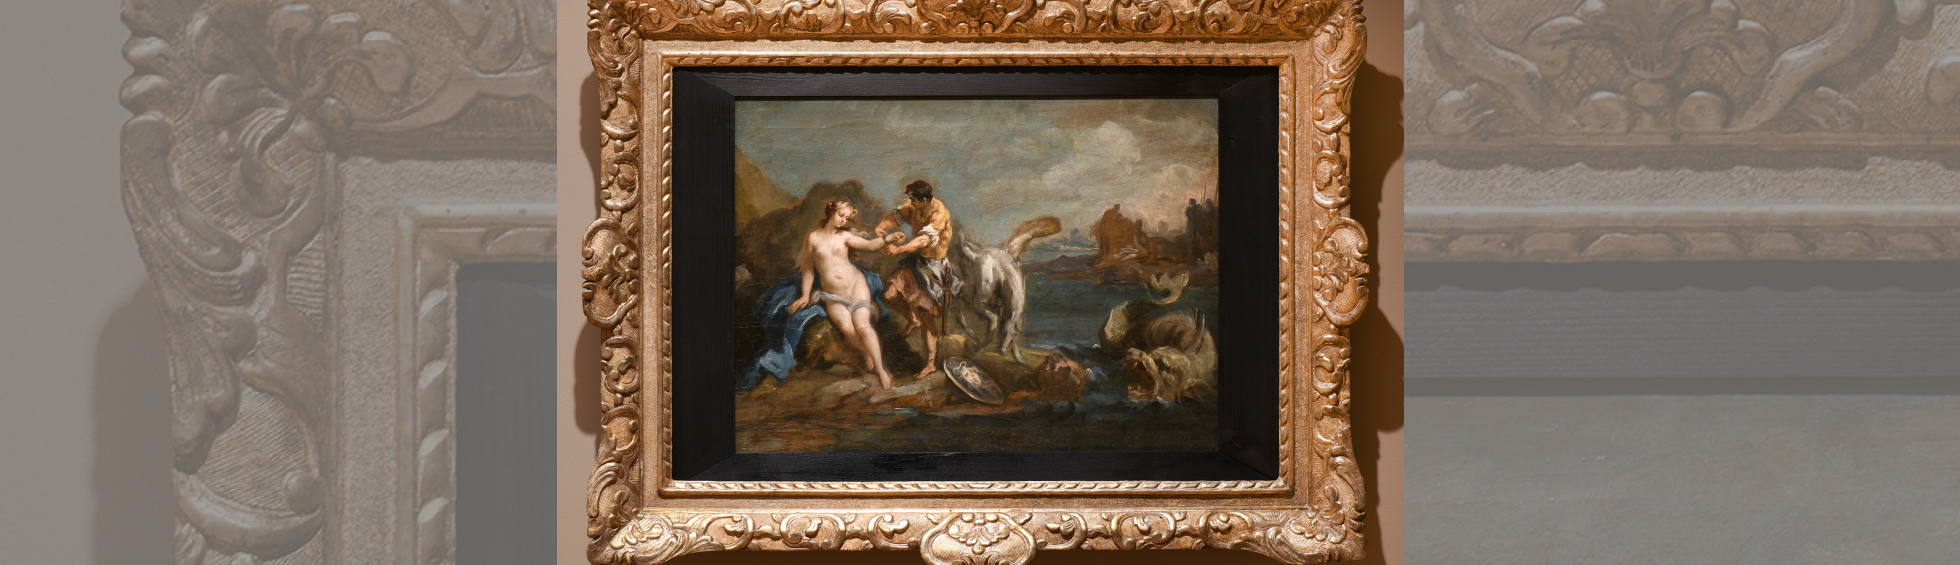 Jacopo AMIGONI (1682-1752), Persée délivrant Andromède. Perpignan, musée d'art Hyacinthe Rigaud. Photo Musée d'art Hyancinthe Rigaud/ Pascale Marchesan